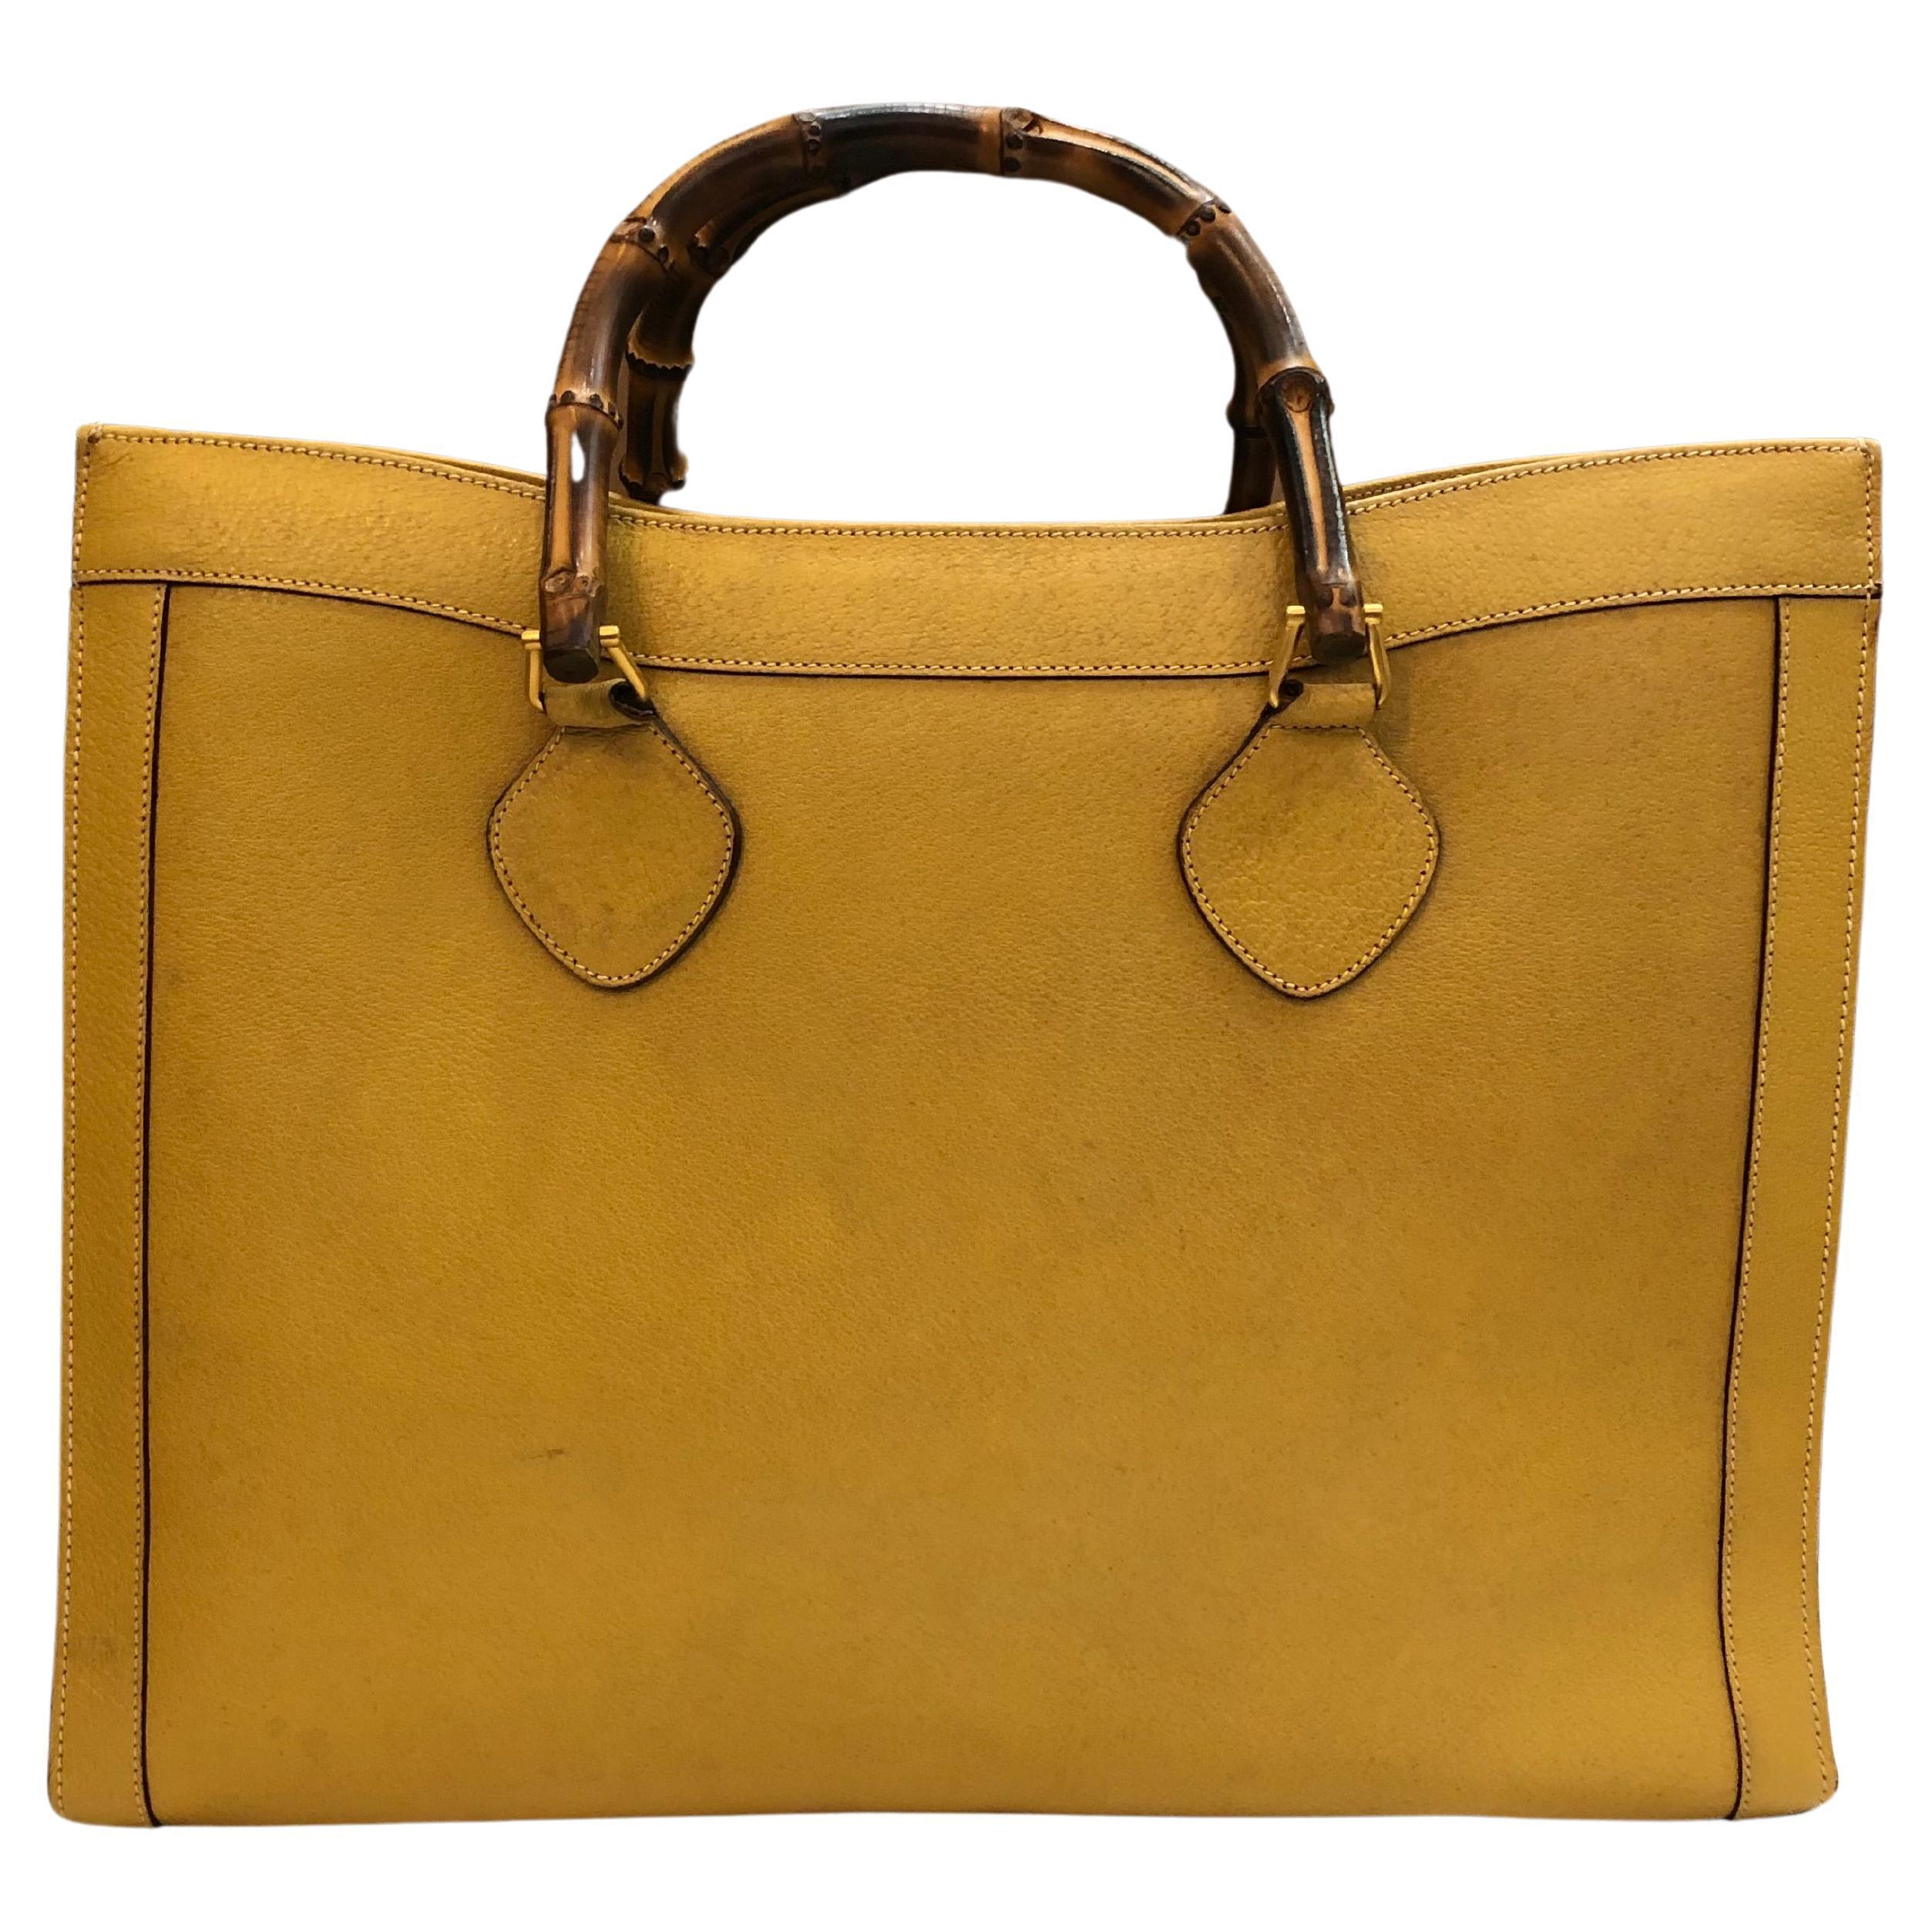 Diese große Gucci Diana Bambus-Tasche im Vintage-Stil ist aus gelbem Schweinsleder gefertigt und verfügt über matte goldfarbene Beschläge und robuste Bambusgriffe. Die breite Oberseite öffnet sich zu einem einzigen geräumigen Fach mit einer